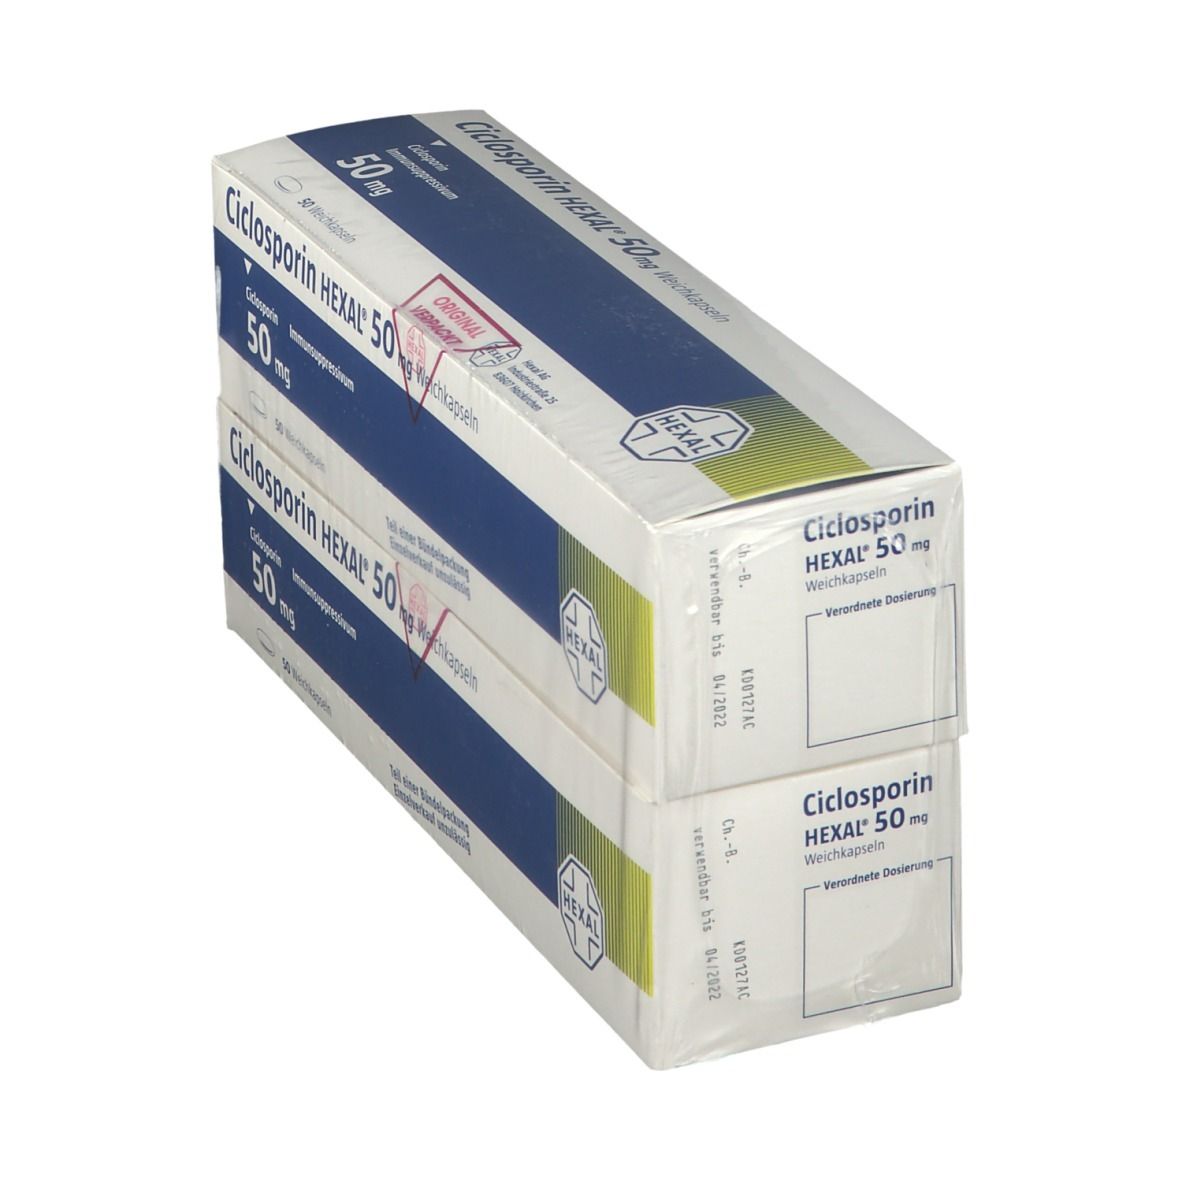 Ciclosporin HEXAL® 50 mg